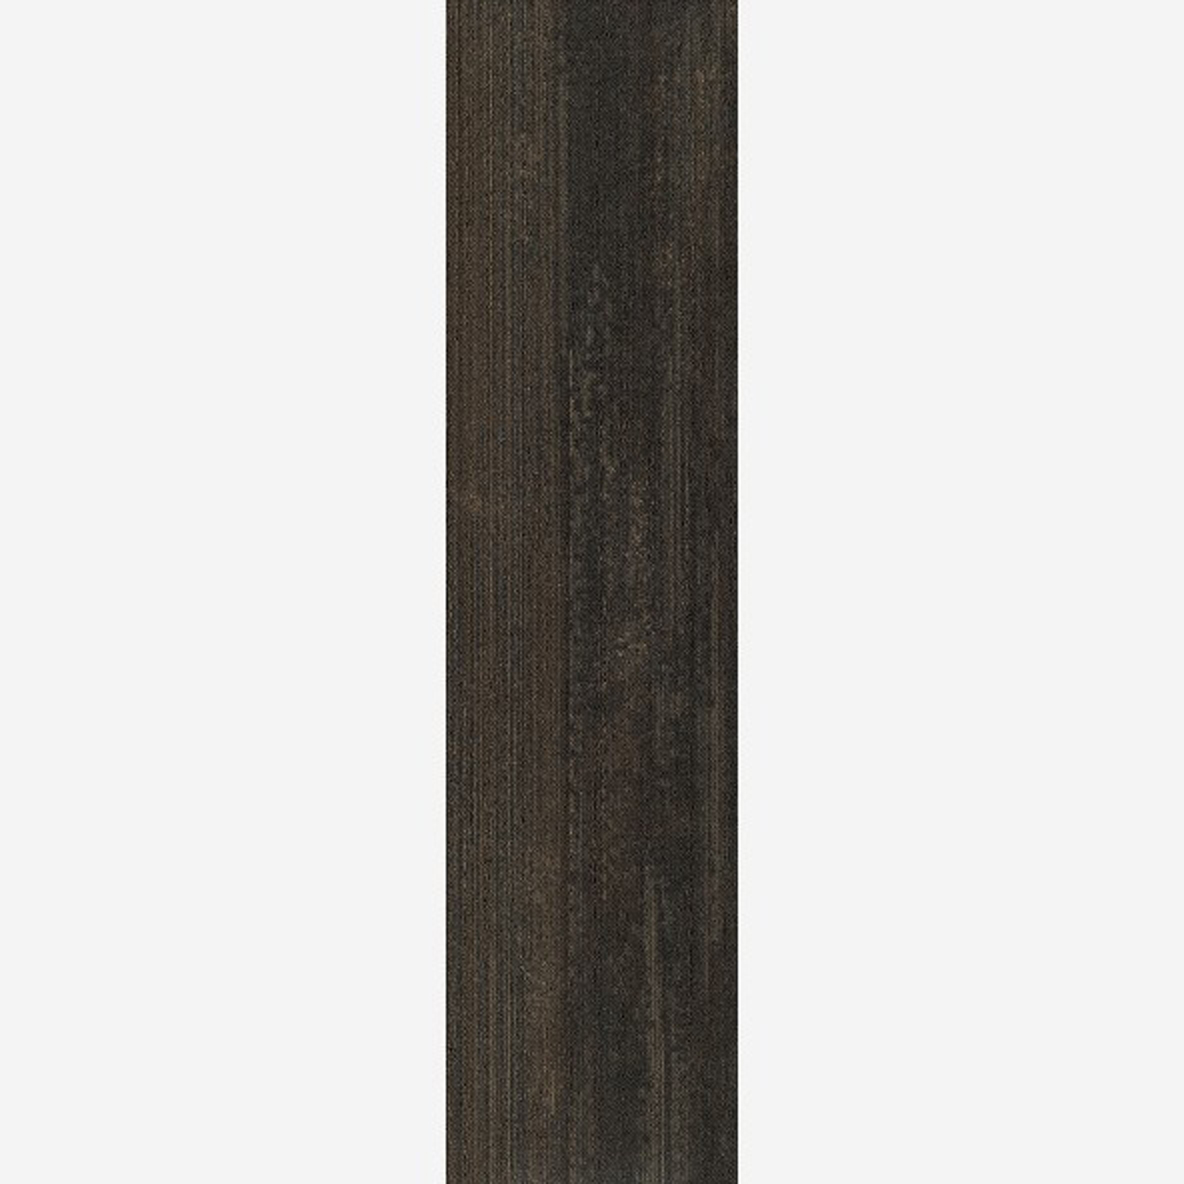 Mocha Black Full Tile Ingrained Commercial Carpet Plank Neutral .28 Inch x 25 cm x 1 Meter Per Plank